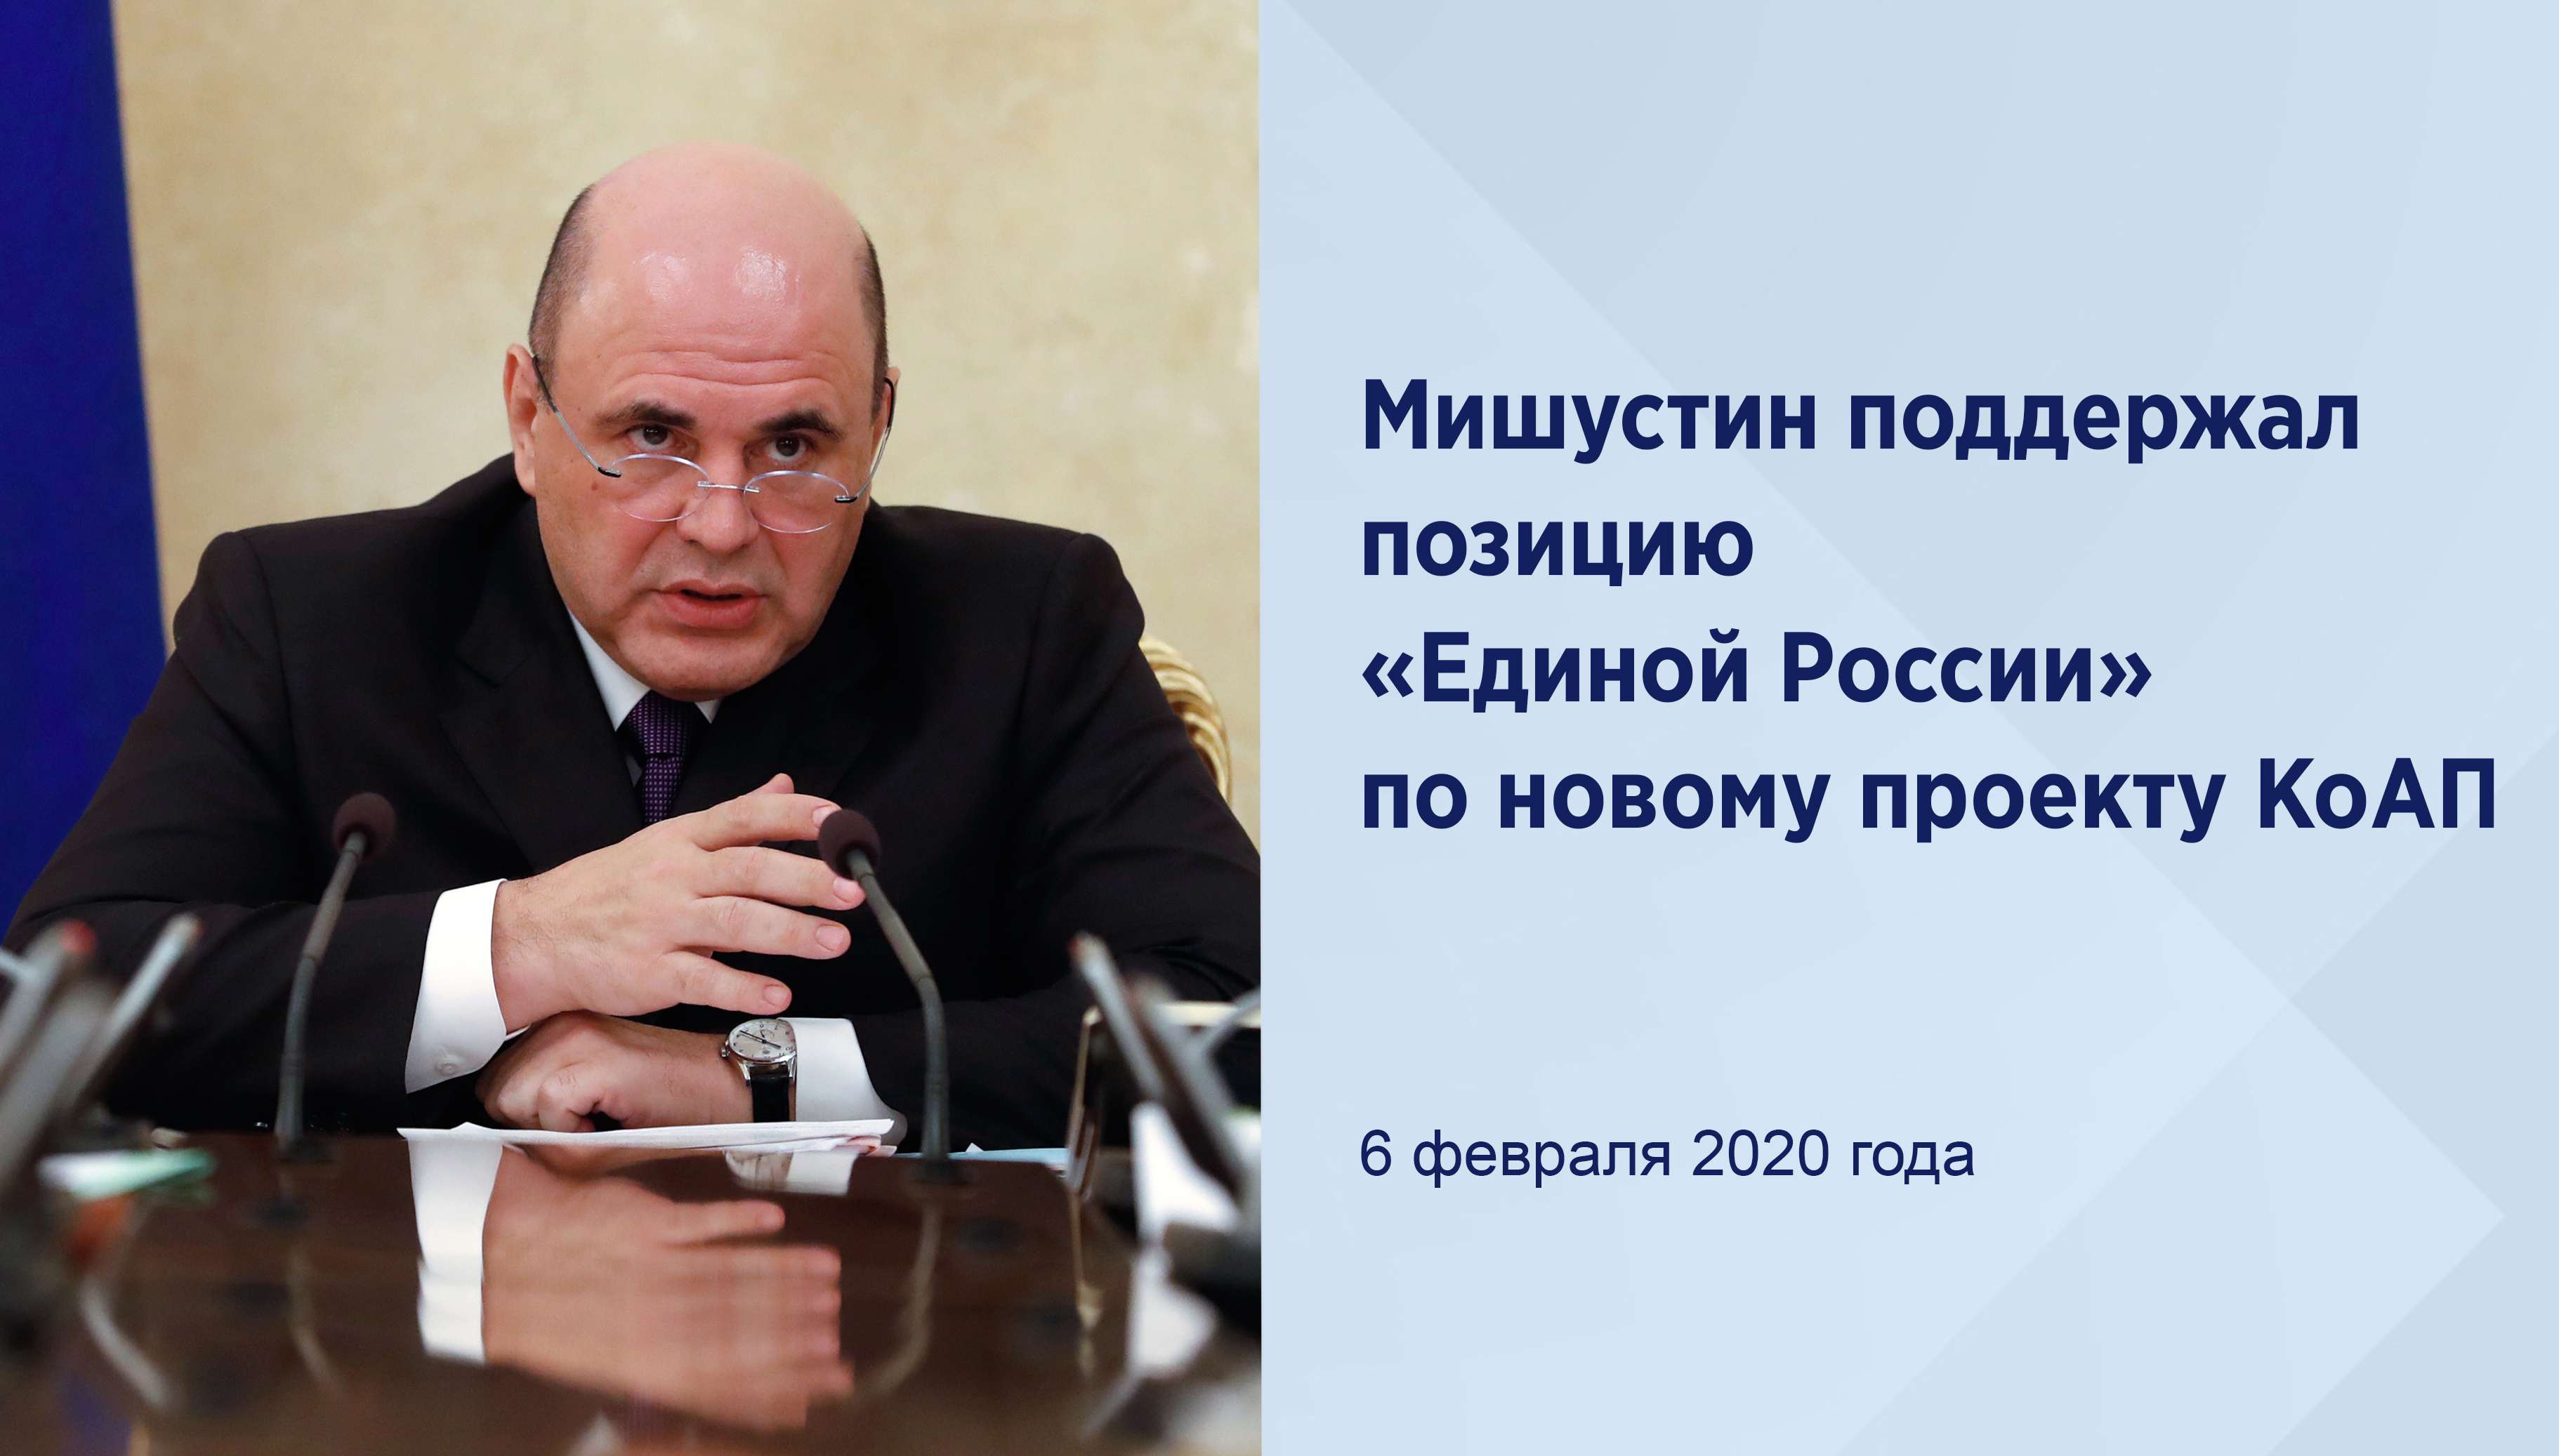 Мишустин поддержал позицию
«Единой России» по новому
проекту КоАП